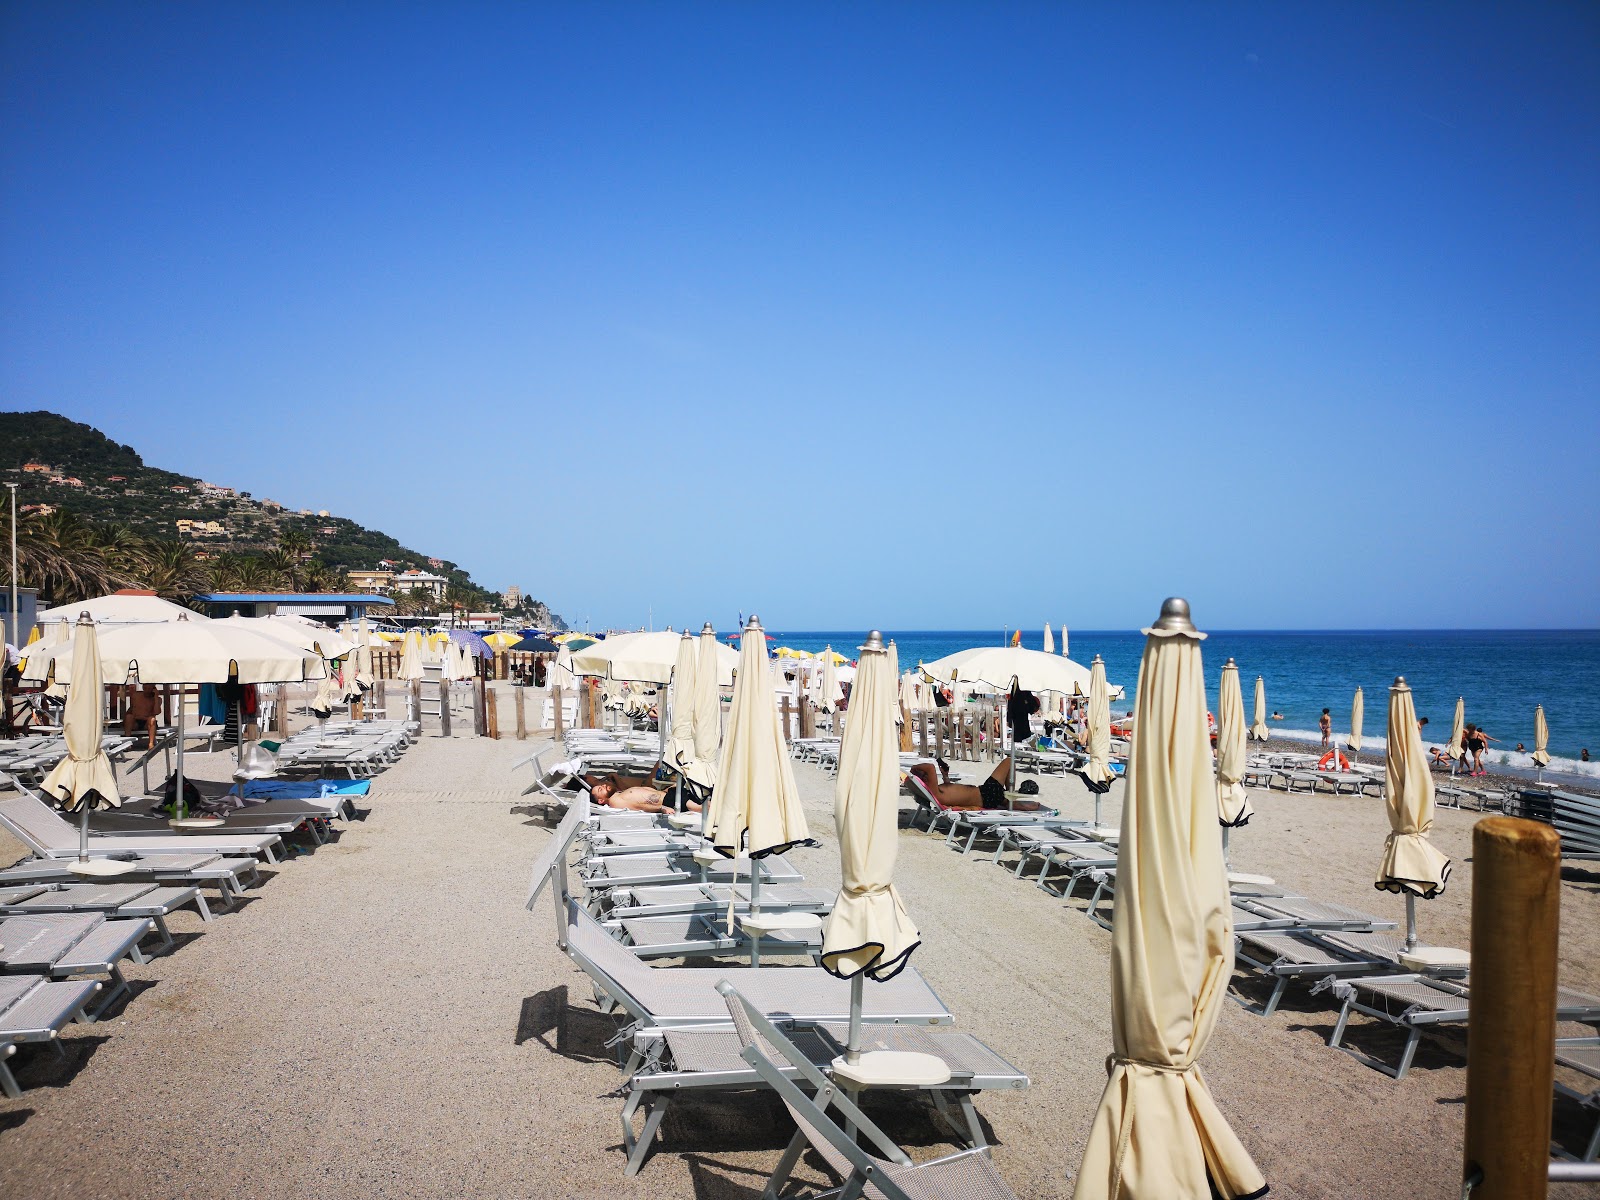 Foto di Spiaggia libera Attrezzata - luogo popolare tra gli intenditori del relax